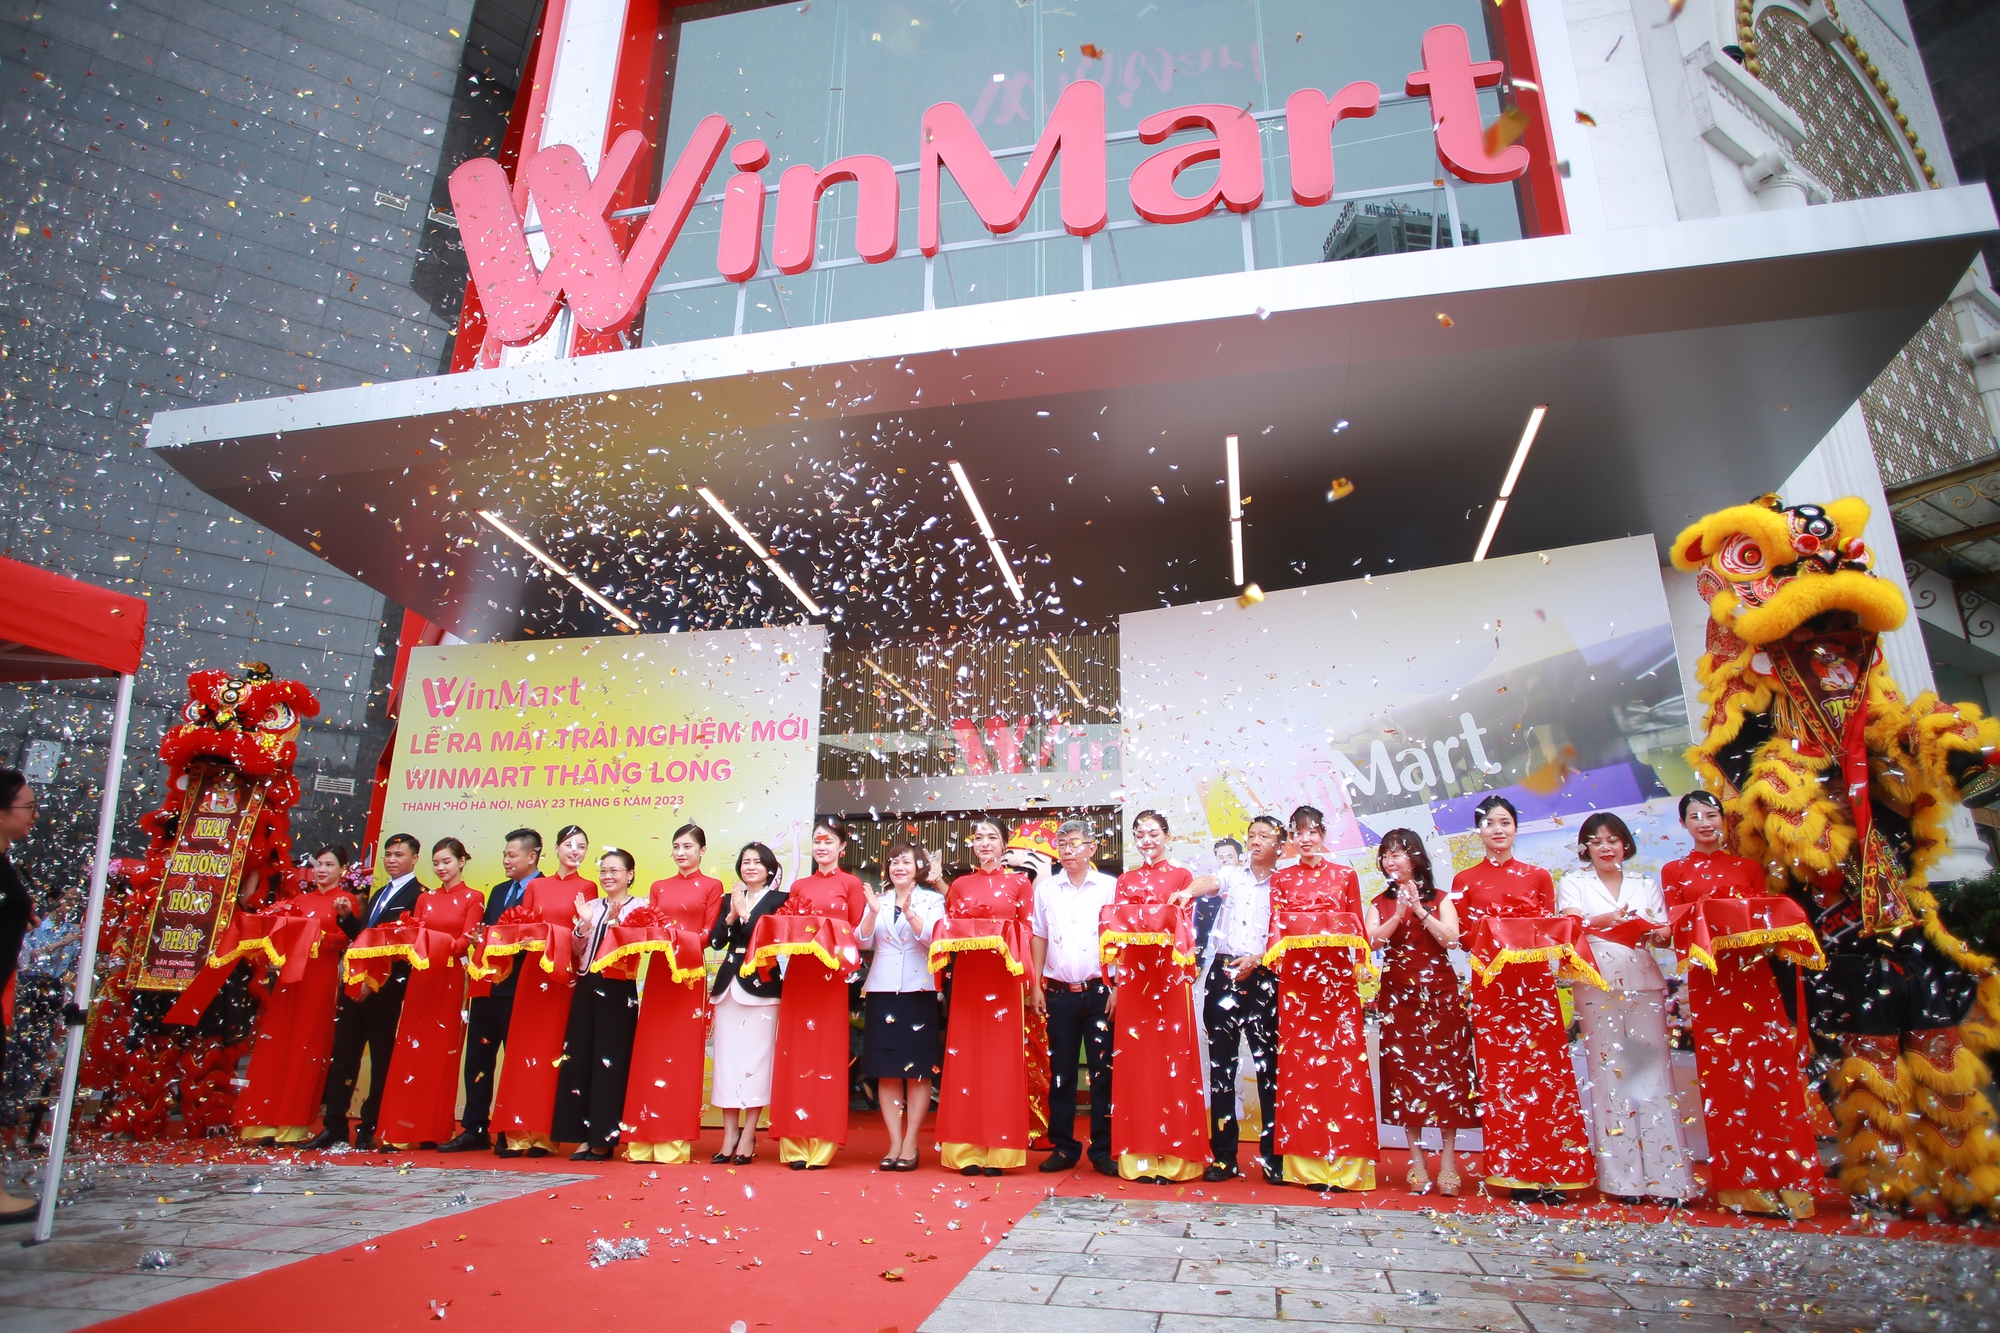 Đầu tư khủng, WinCommerce nâng cấp siêu thị WinMart Thăng Long theo mô hình trải nghiệm mới - Ảnh 1.